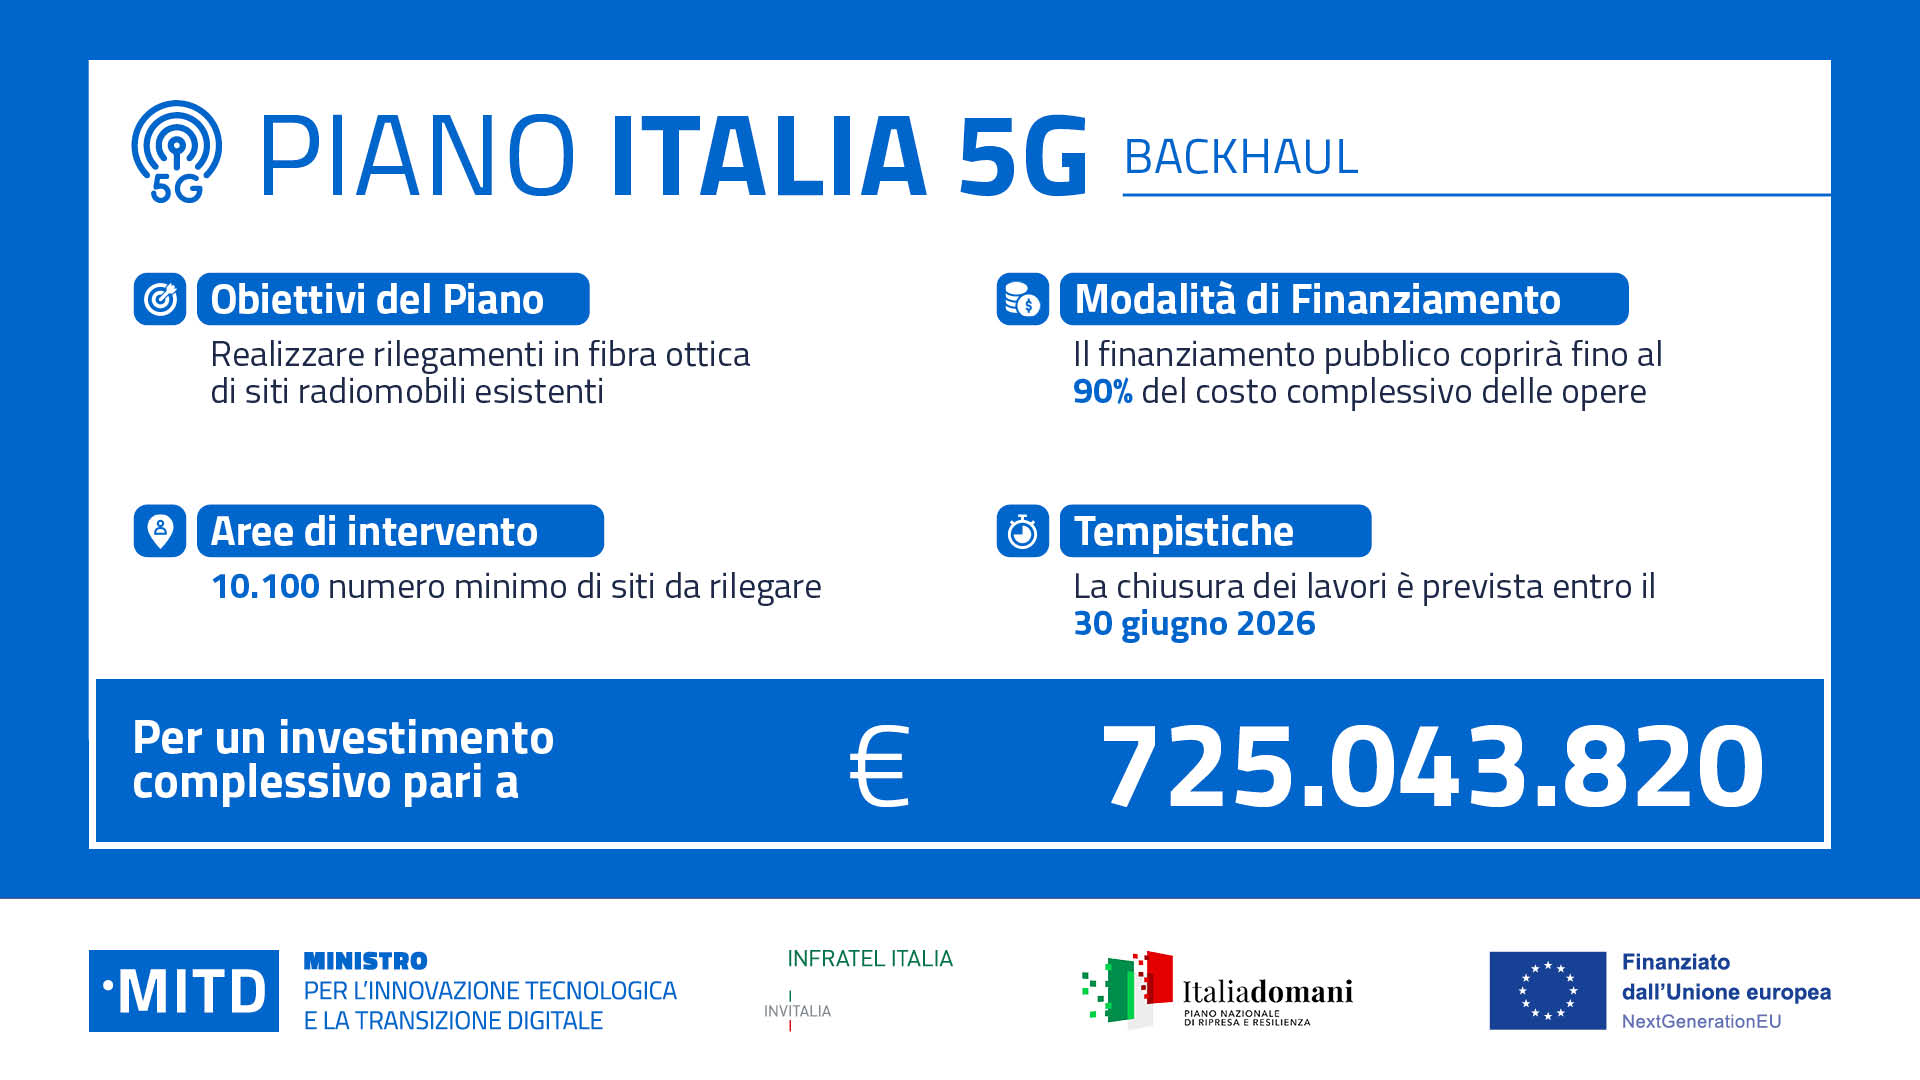 Piano Italia 5G - Linea di intervento A